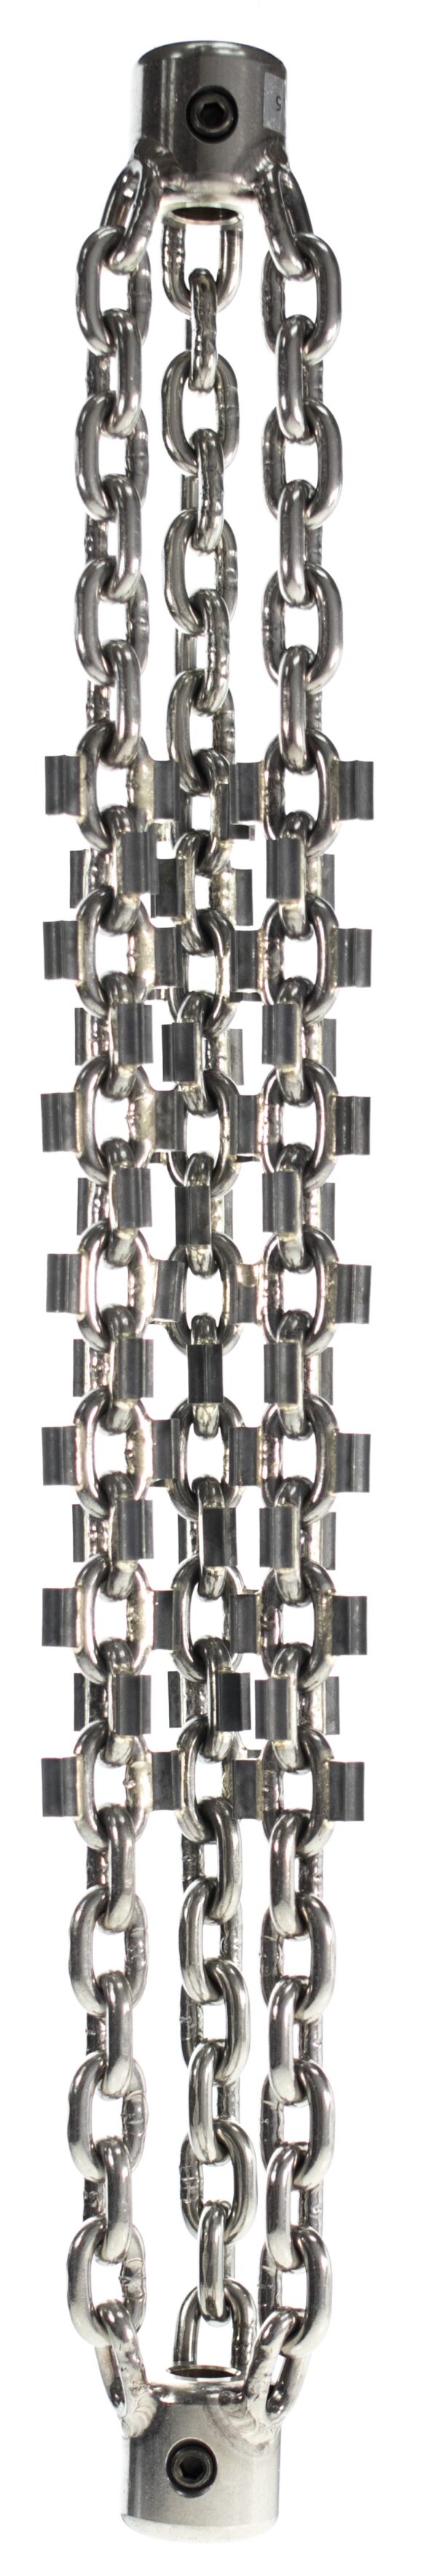 Original Standard Chain DN200 – 12mm Shaft